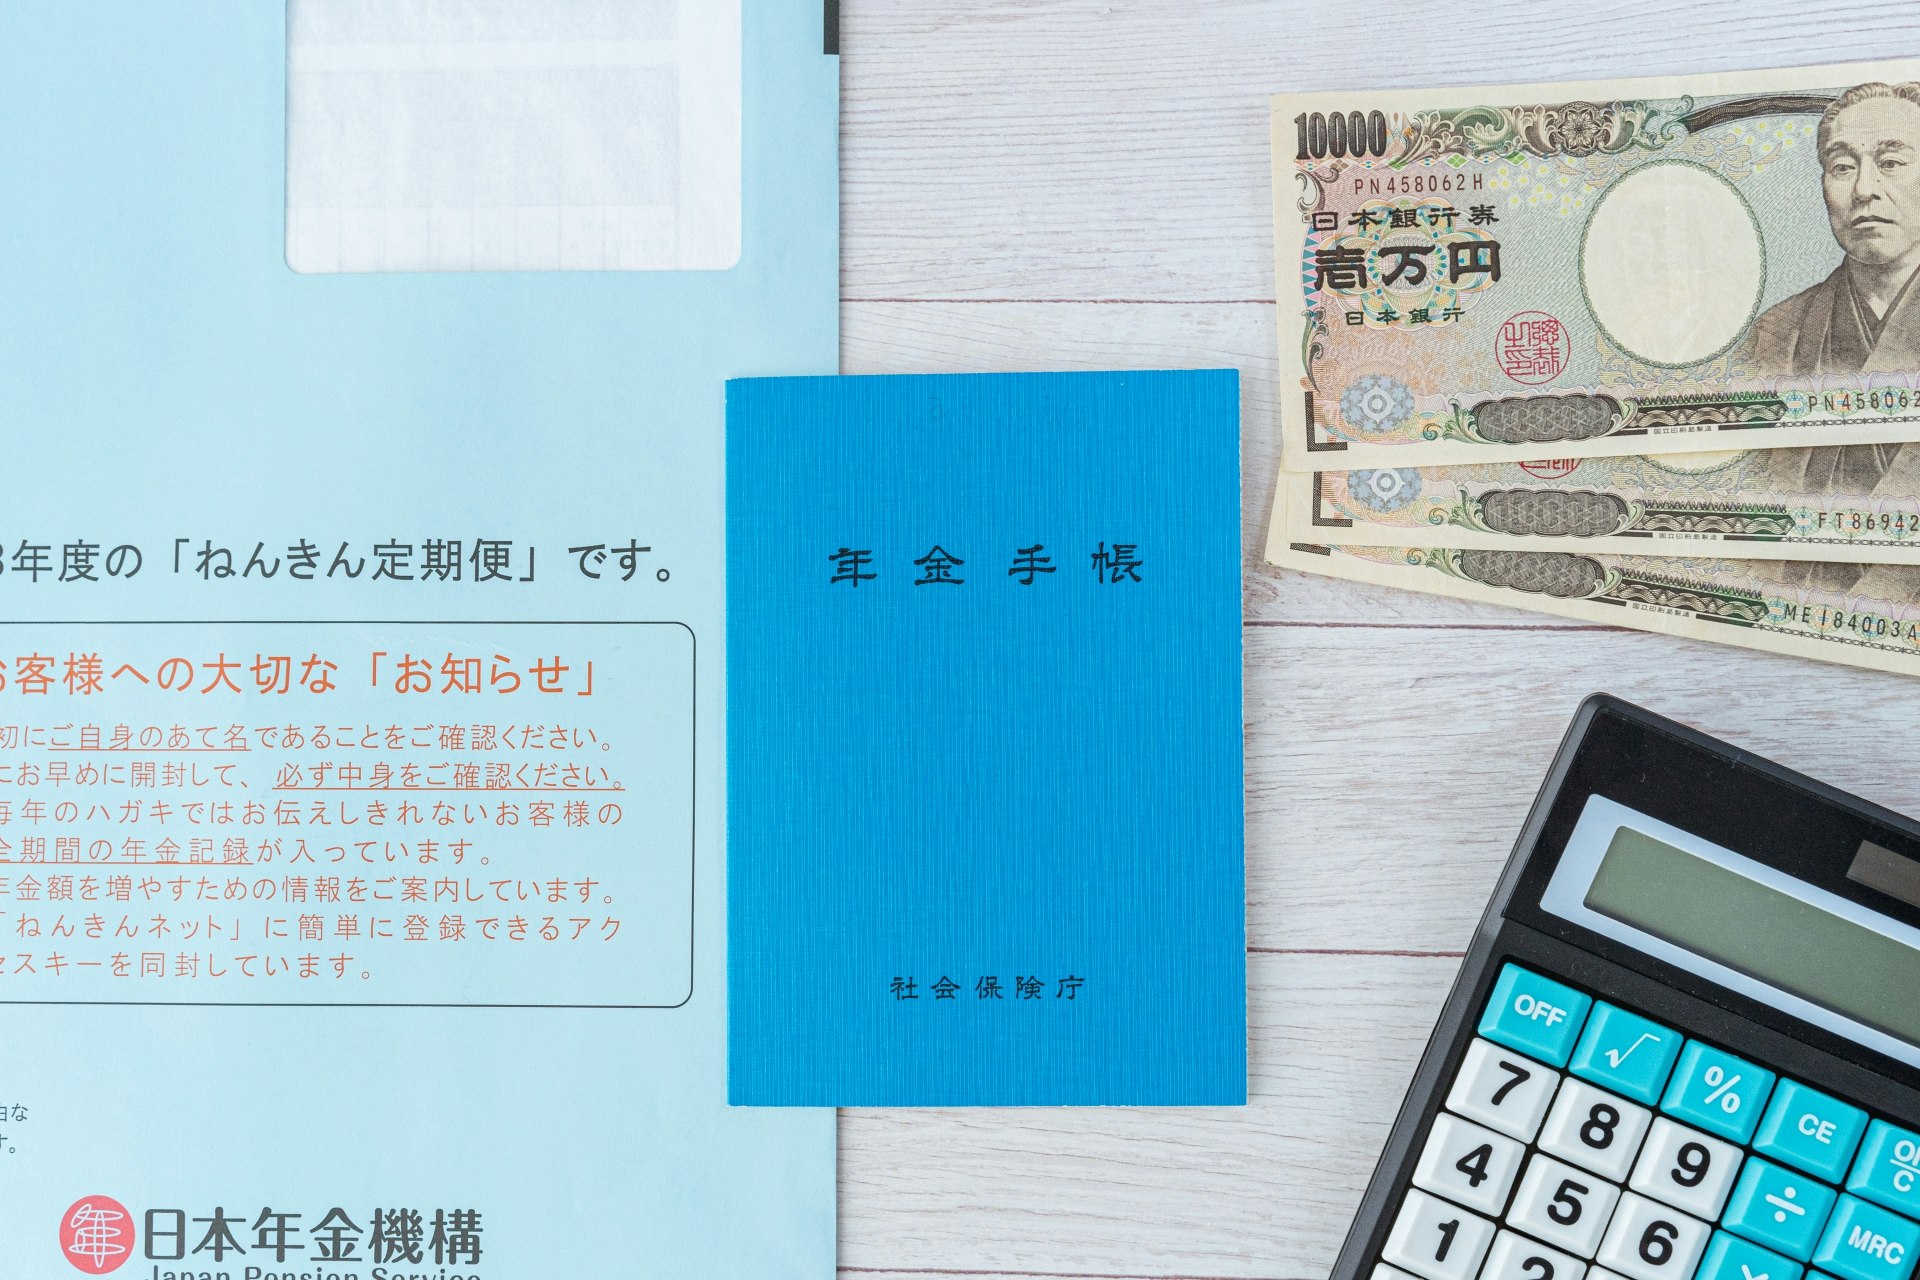 青い表紙の年金手帳と封書で届いた「ねんきん定期便」